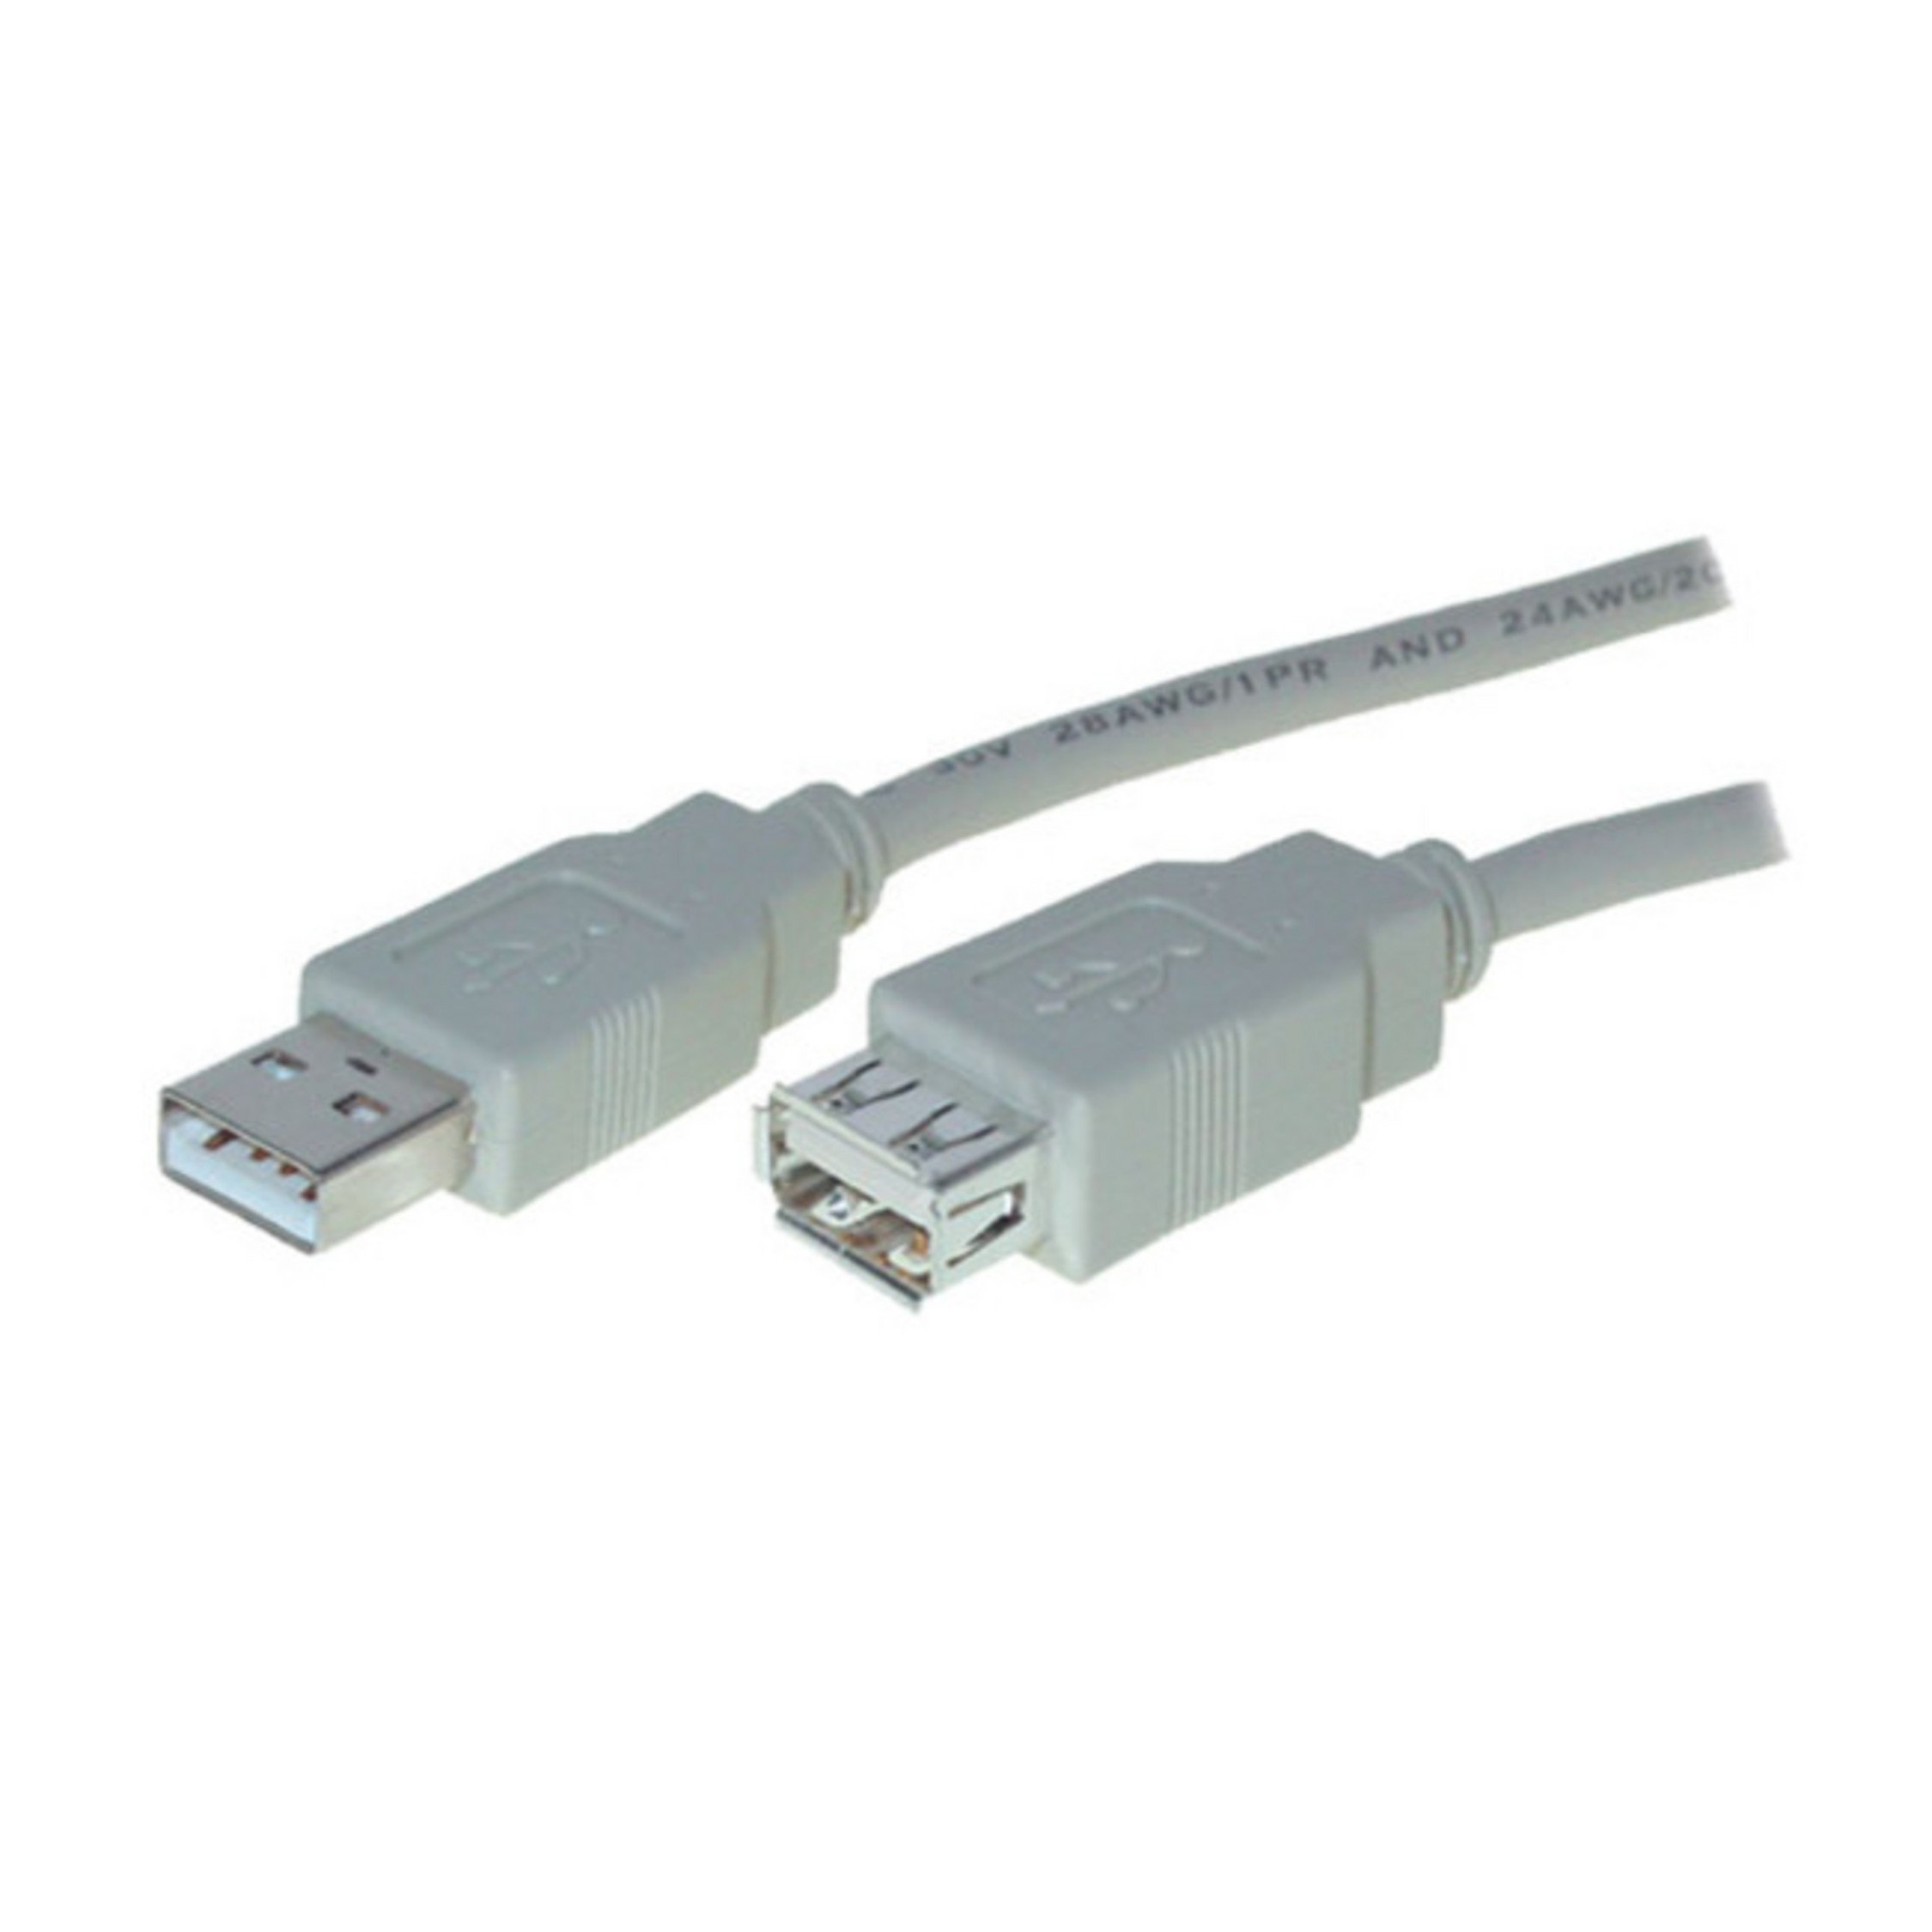 S/CONN MAXIMUM USB USB 2.0, / A Speed CONNECTIVITY Verlängerung 3m Kabel Stecker Buchse High A USB